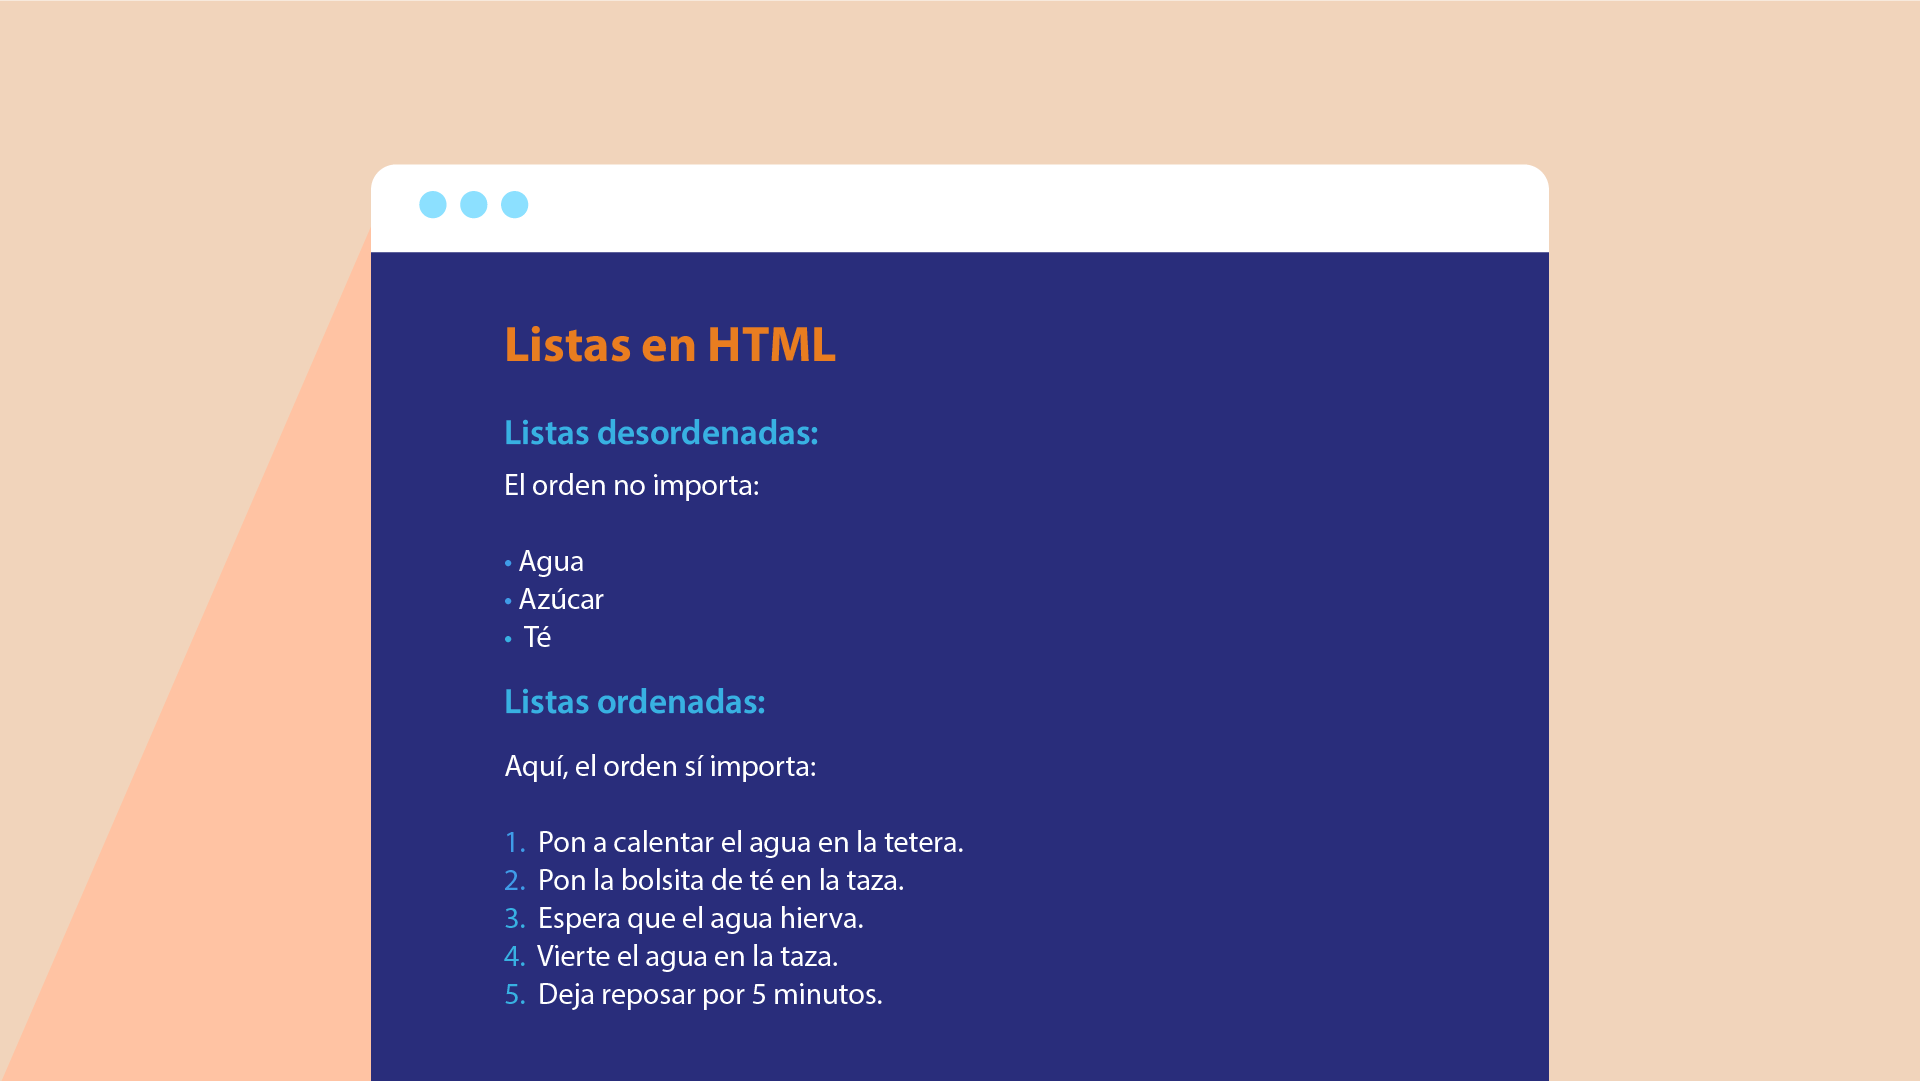 Listas en HTML